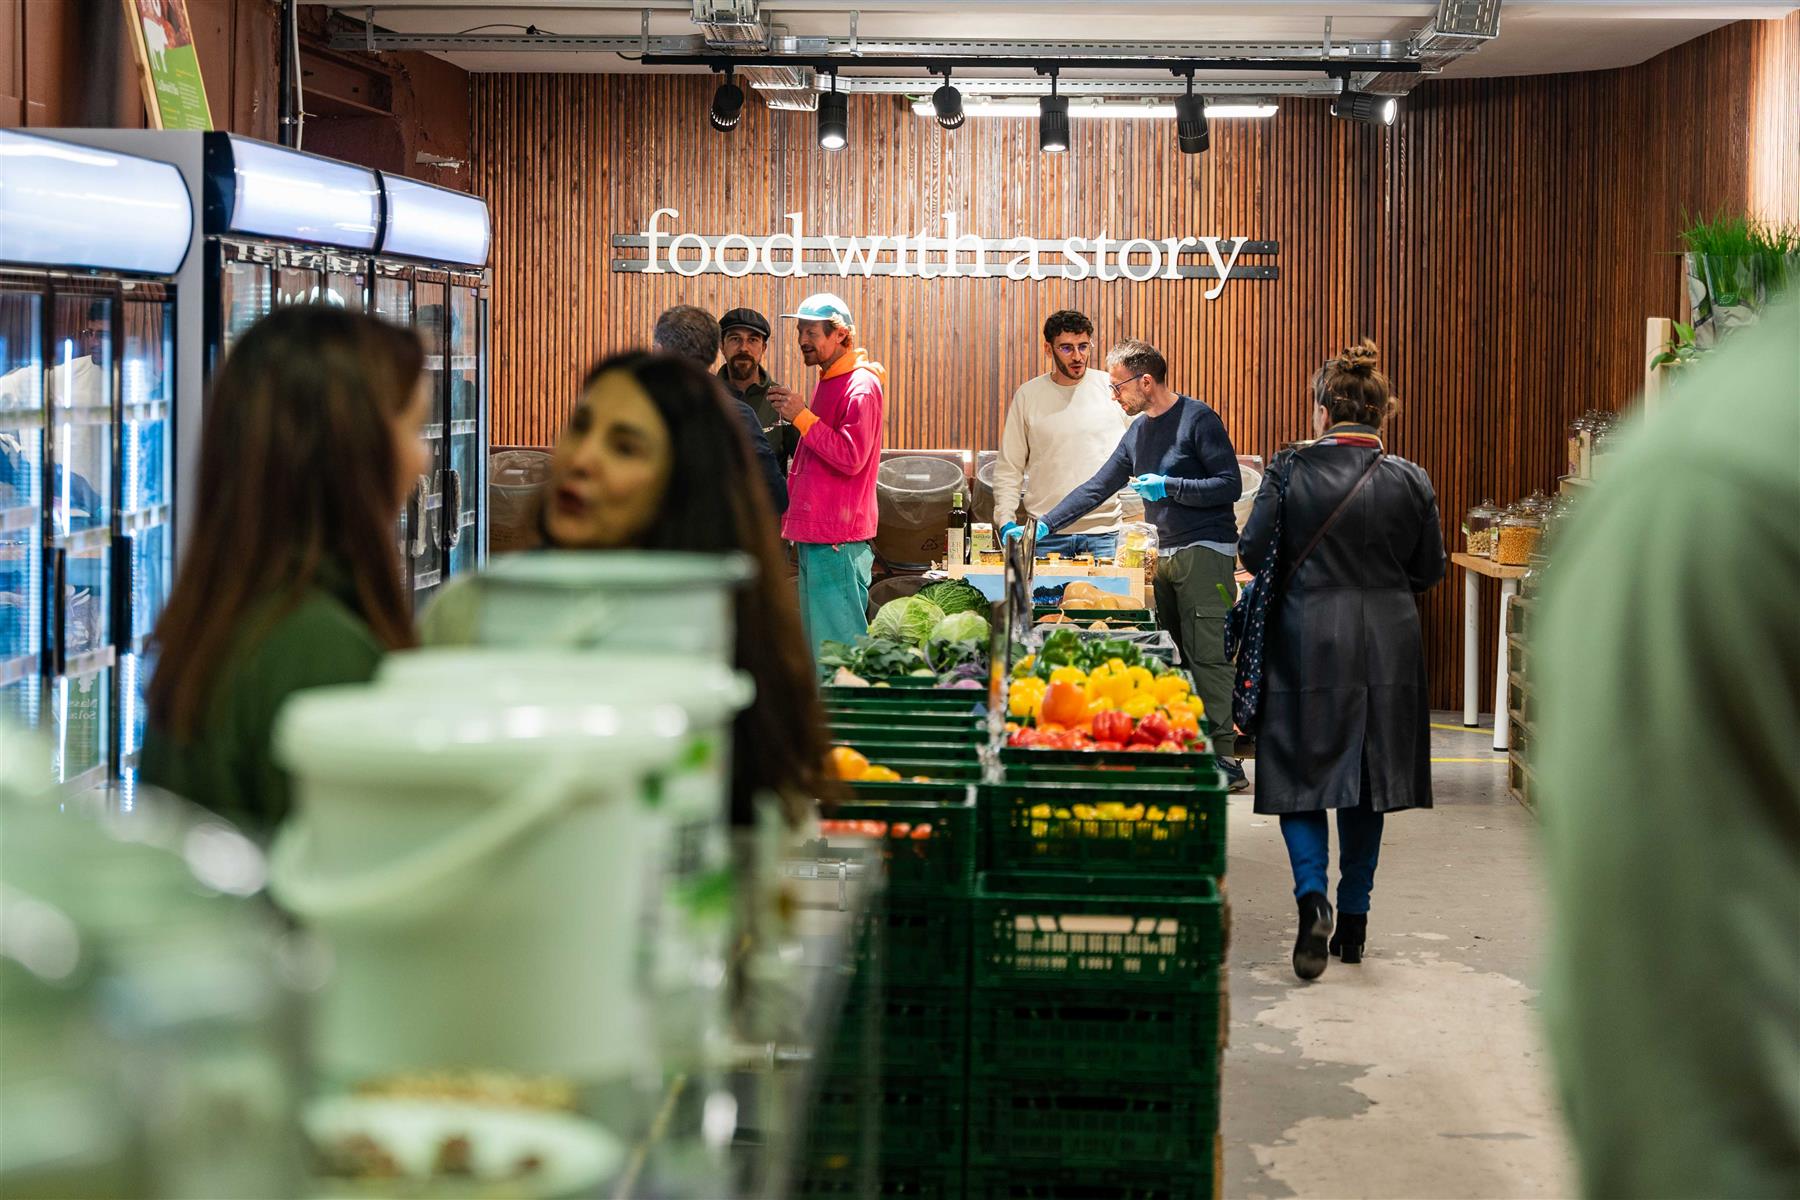 BelFood (précedemment The Food Hub) est le magasin bio de Groot Eiland à Molenbeek proposant des produits locaux, équitables et de qualité